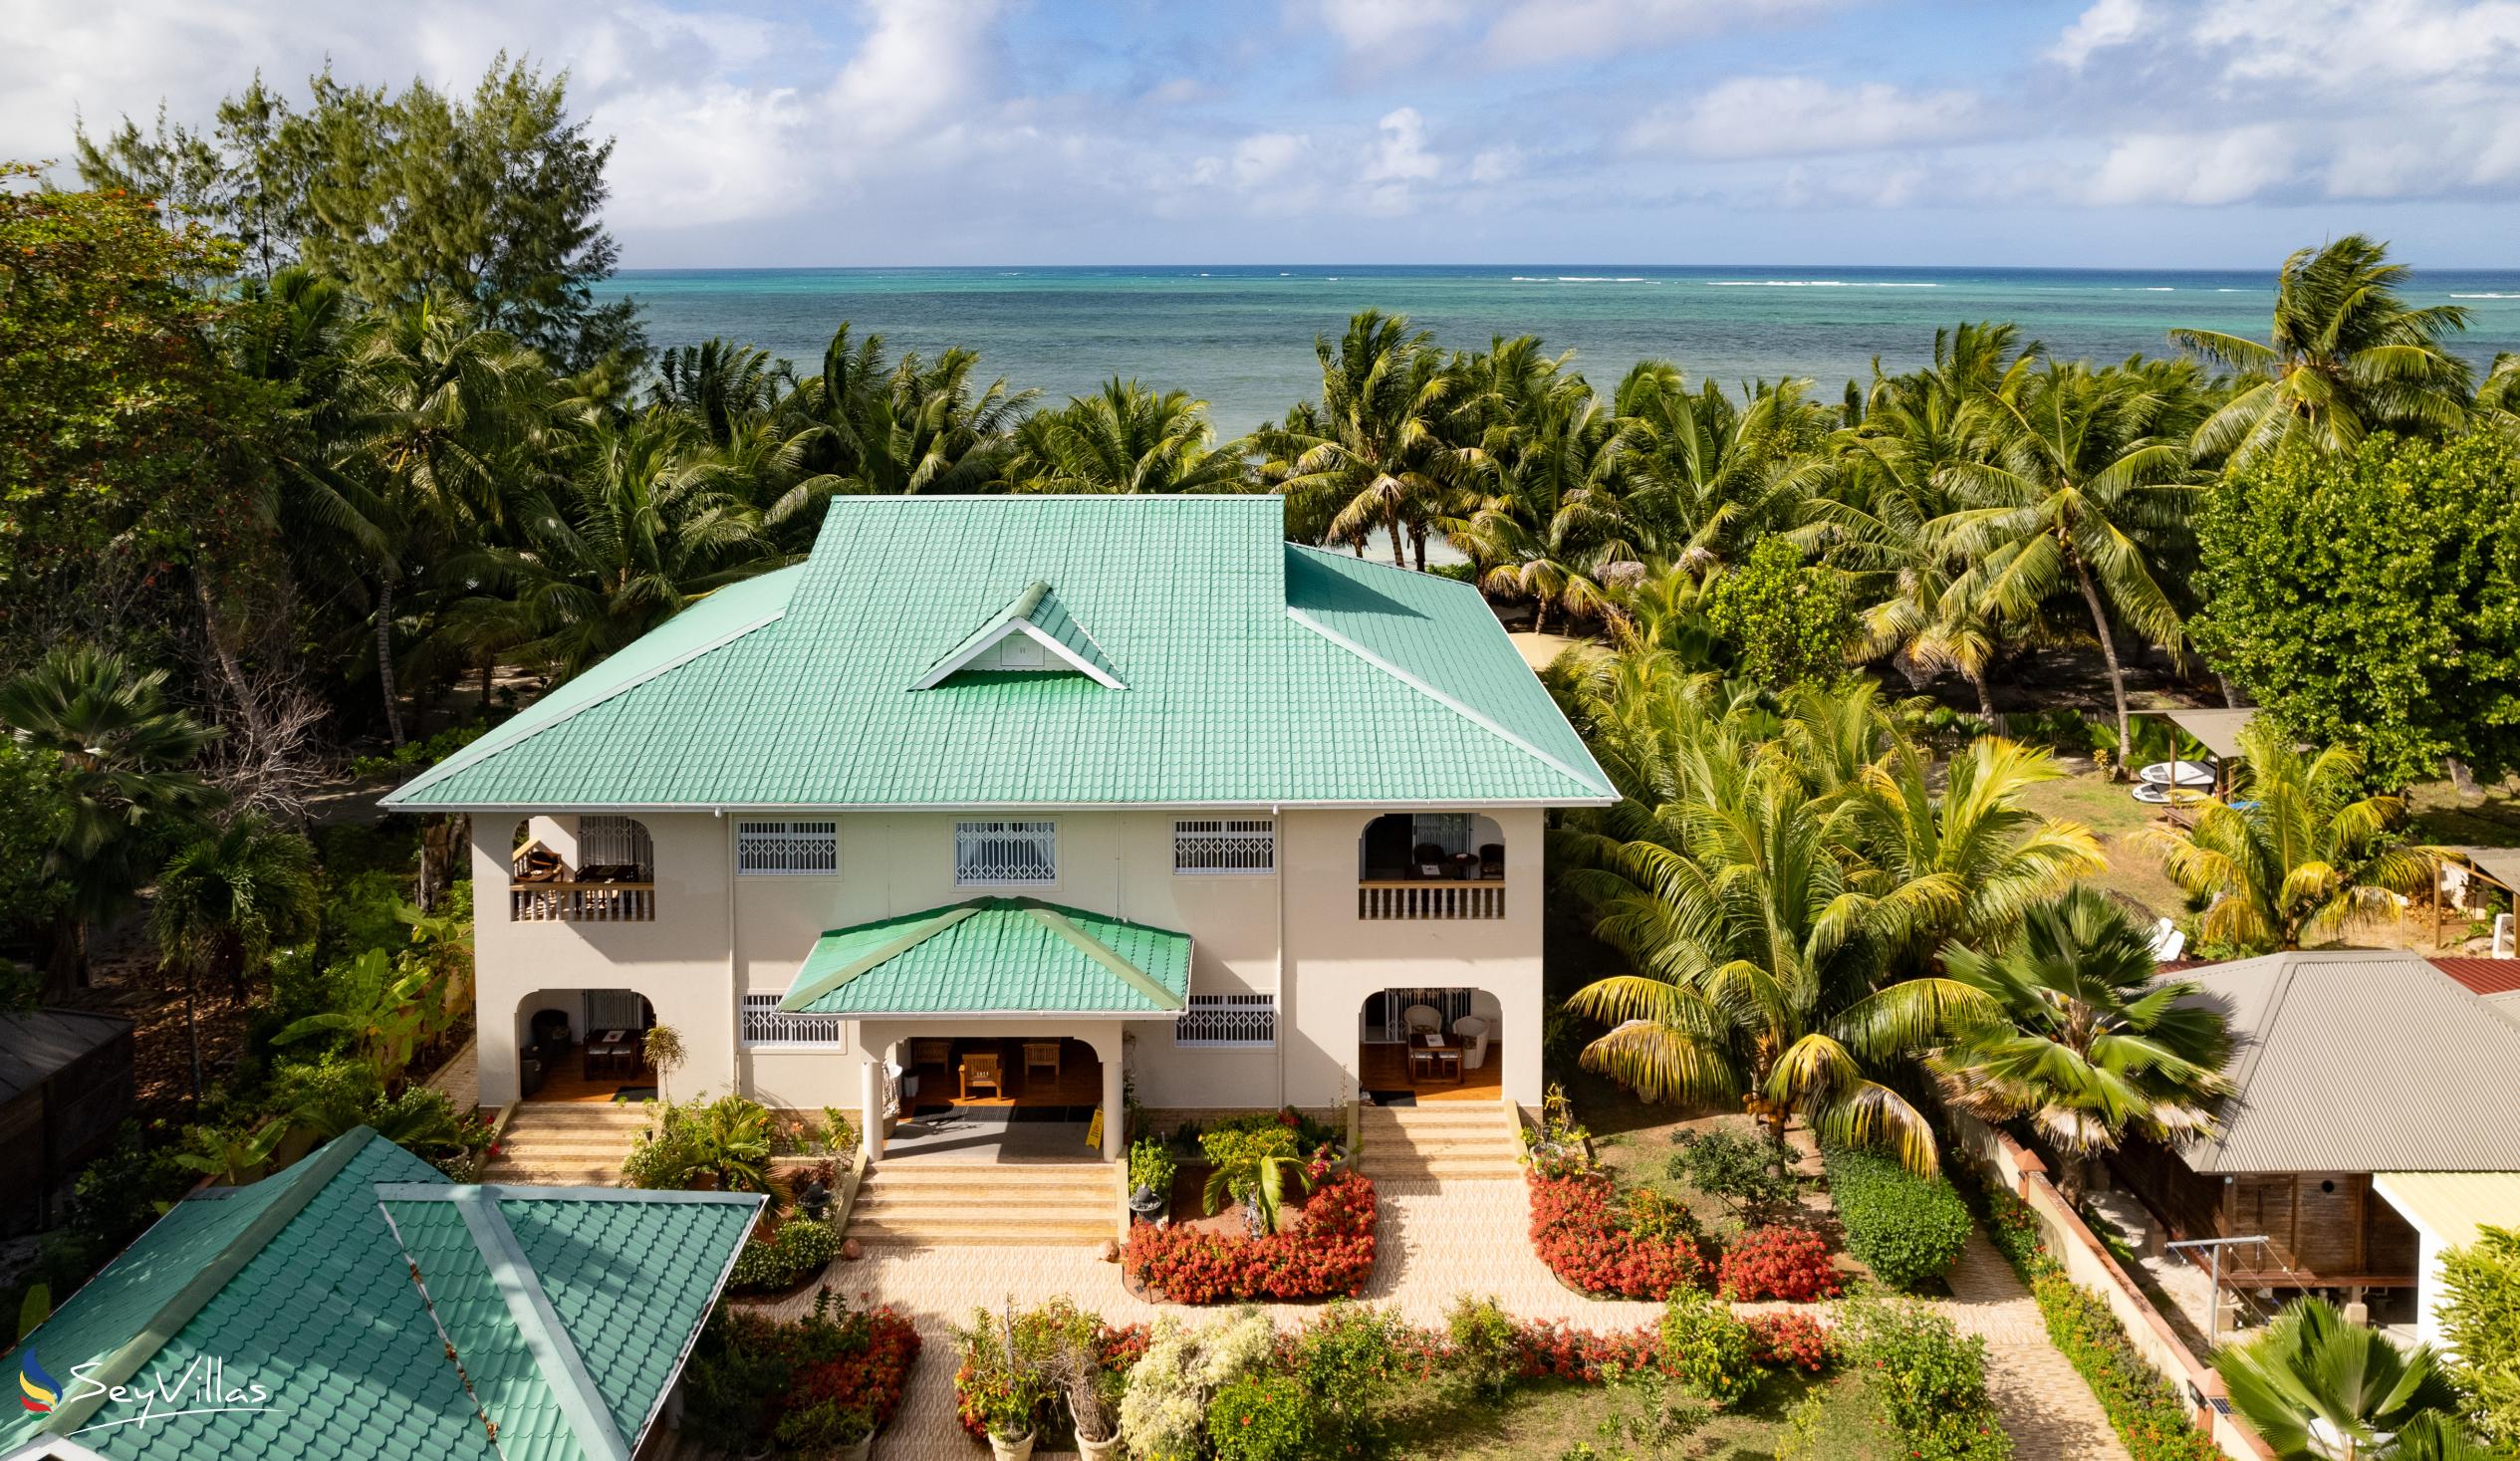 Foto 1: Seashell Beach Villa - Aussenbereich - Praslin (Seychellen)